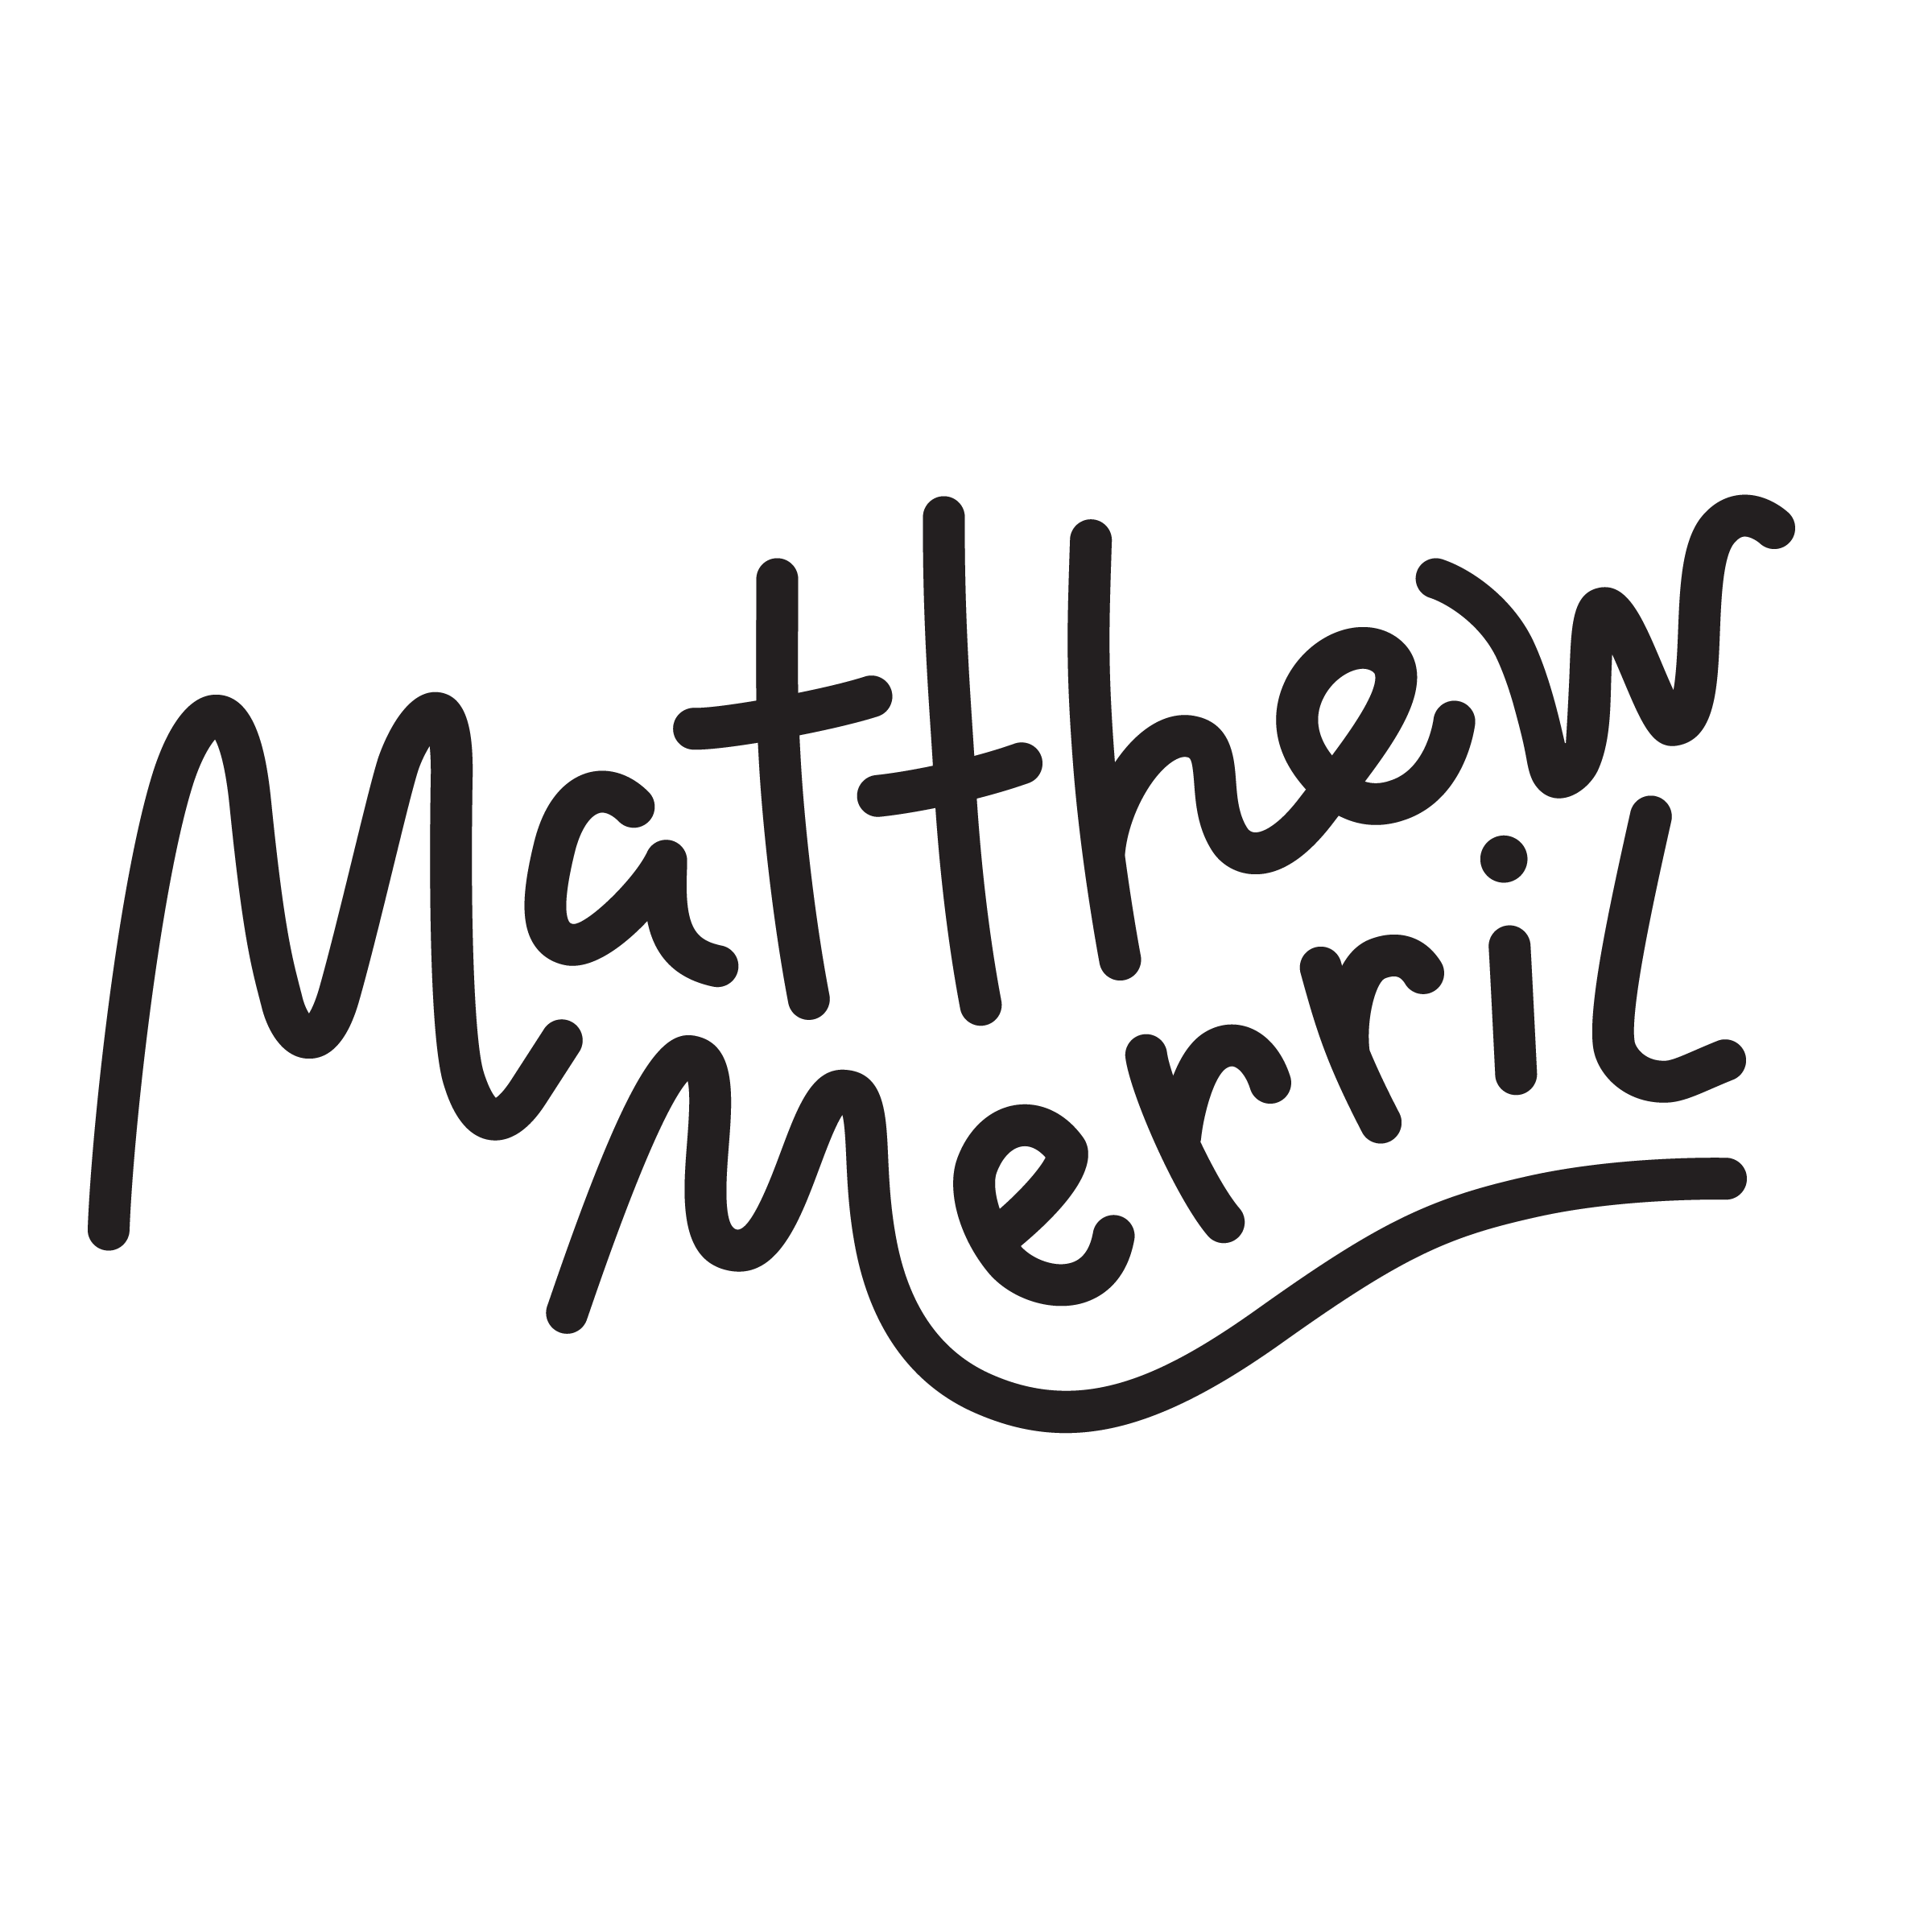 Matthew Merril